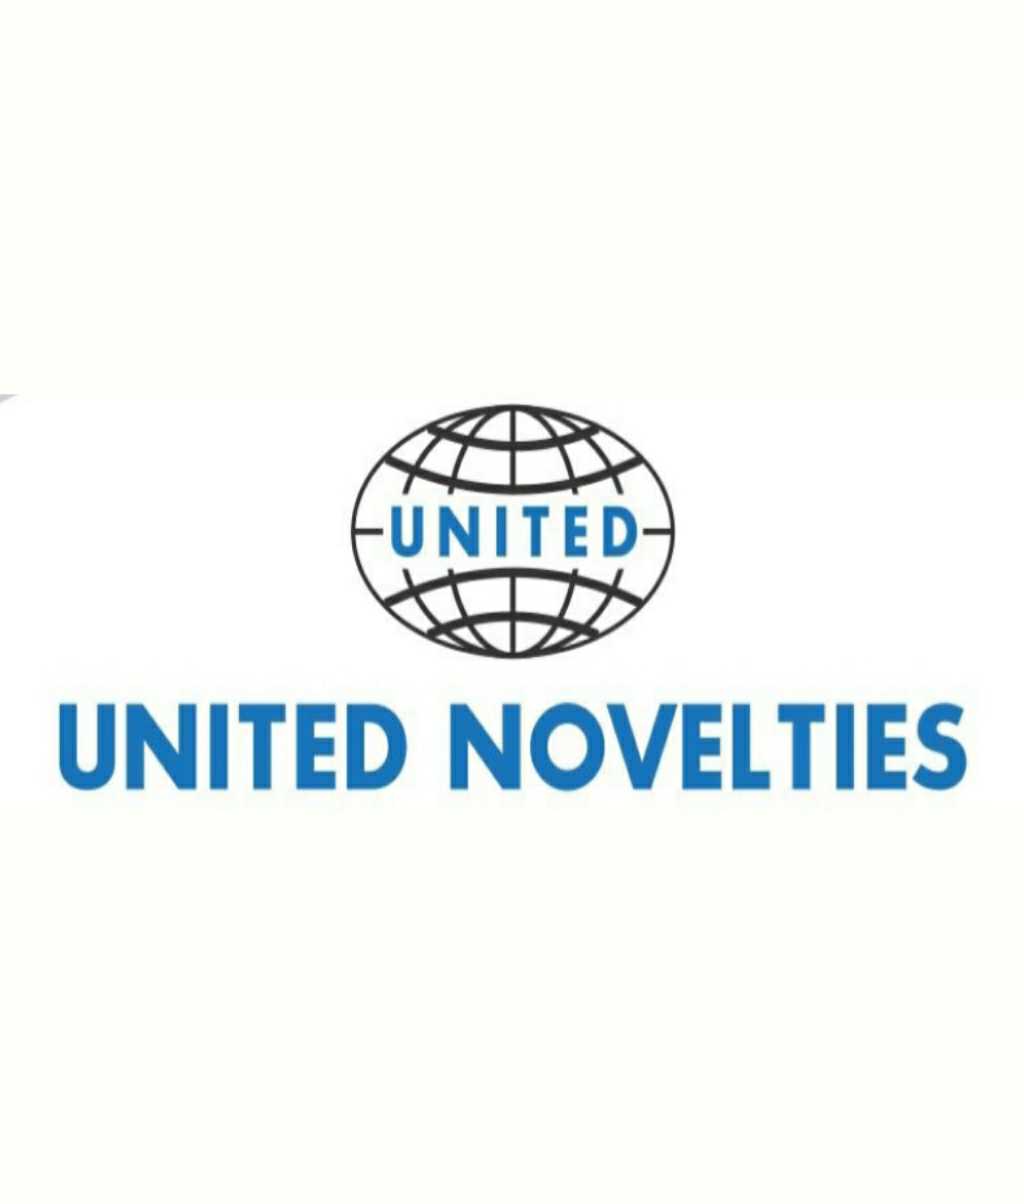 United Novelties